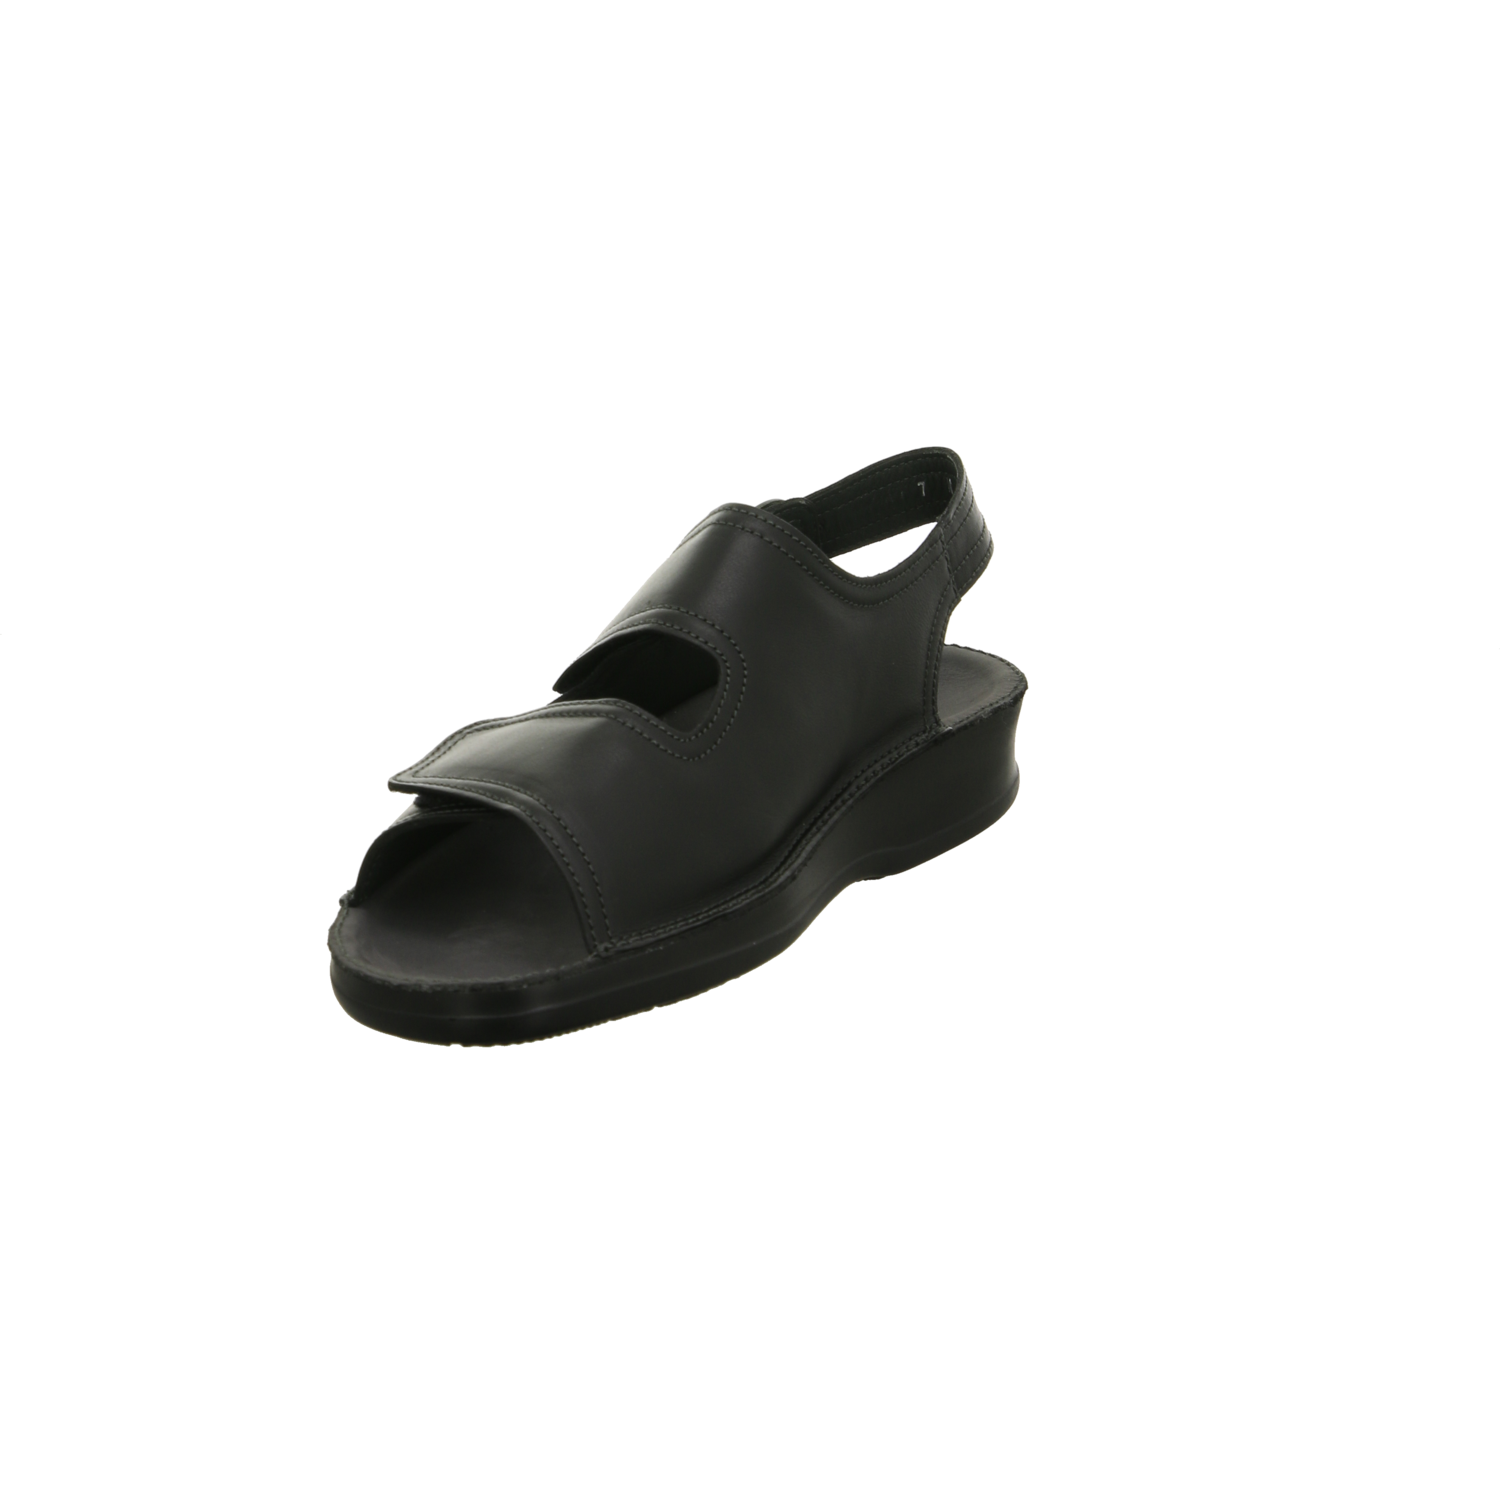 Ströber Sandalette schwarz